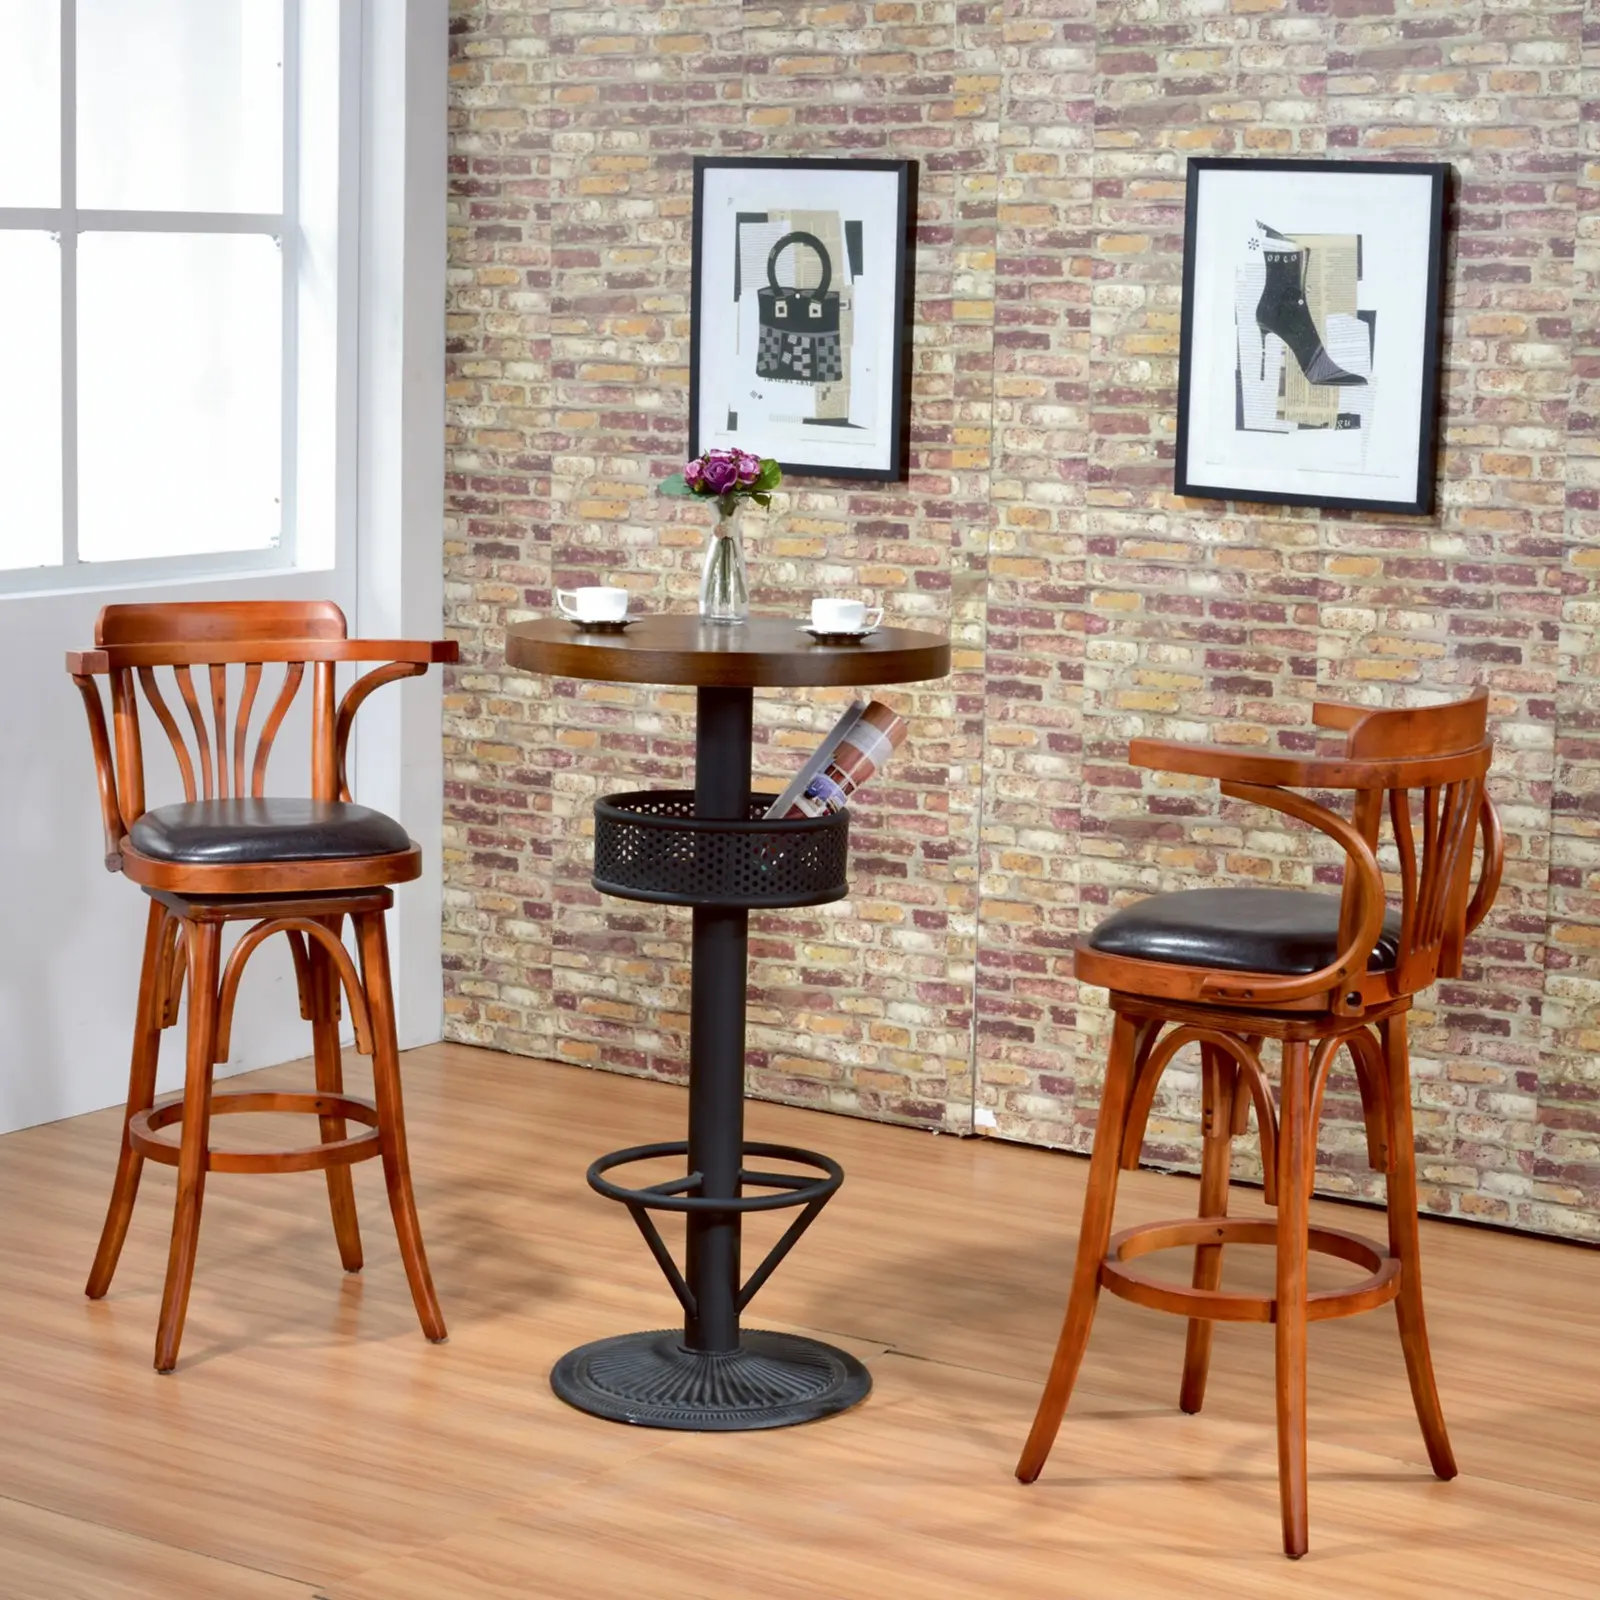 Proveedor de muebles, taburete de bar Retro giratorio de madera maciza, silla de Bar con brazos, silla de Bar giratoria